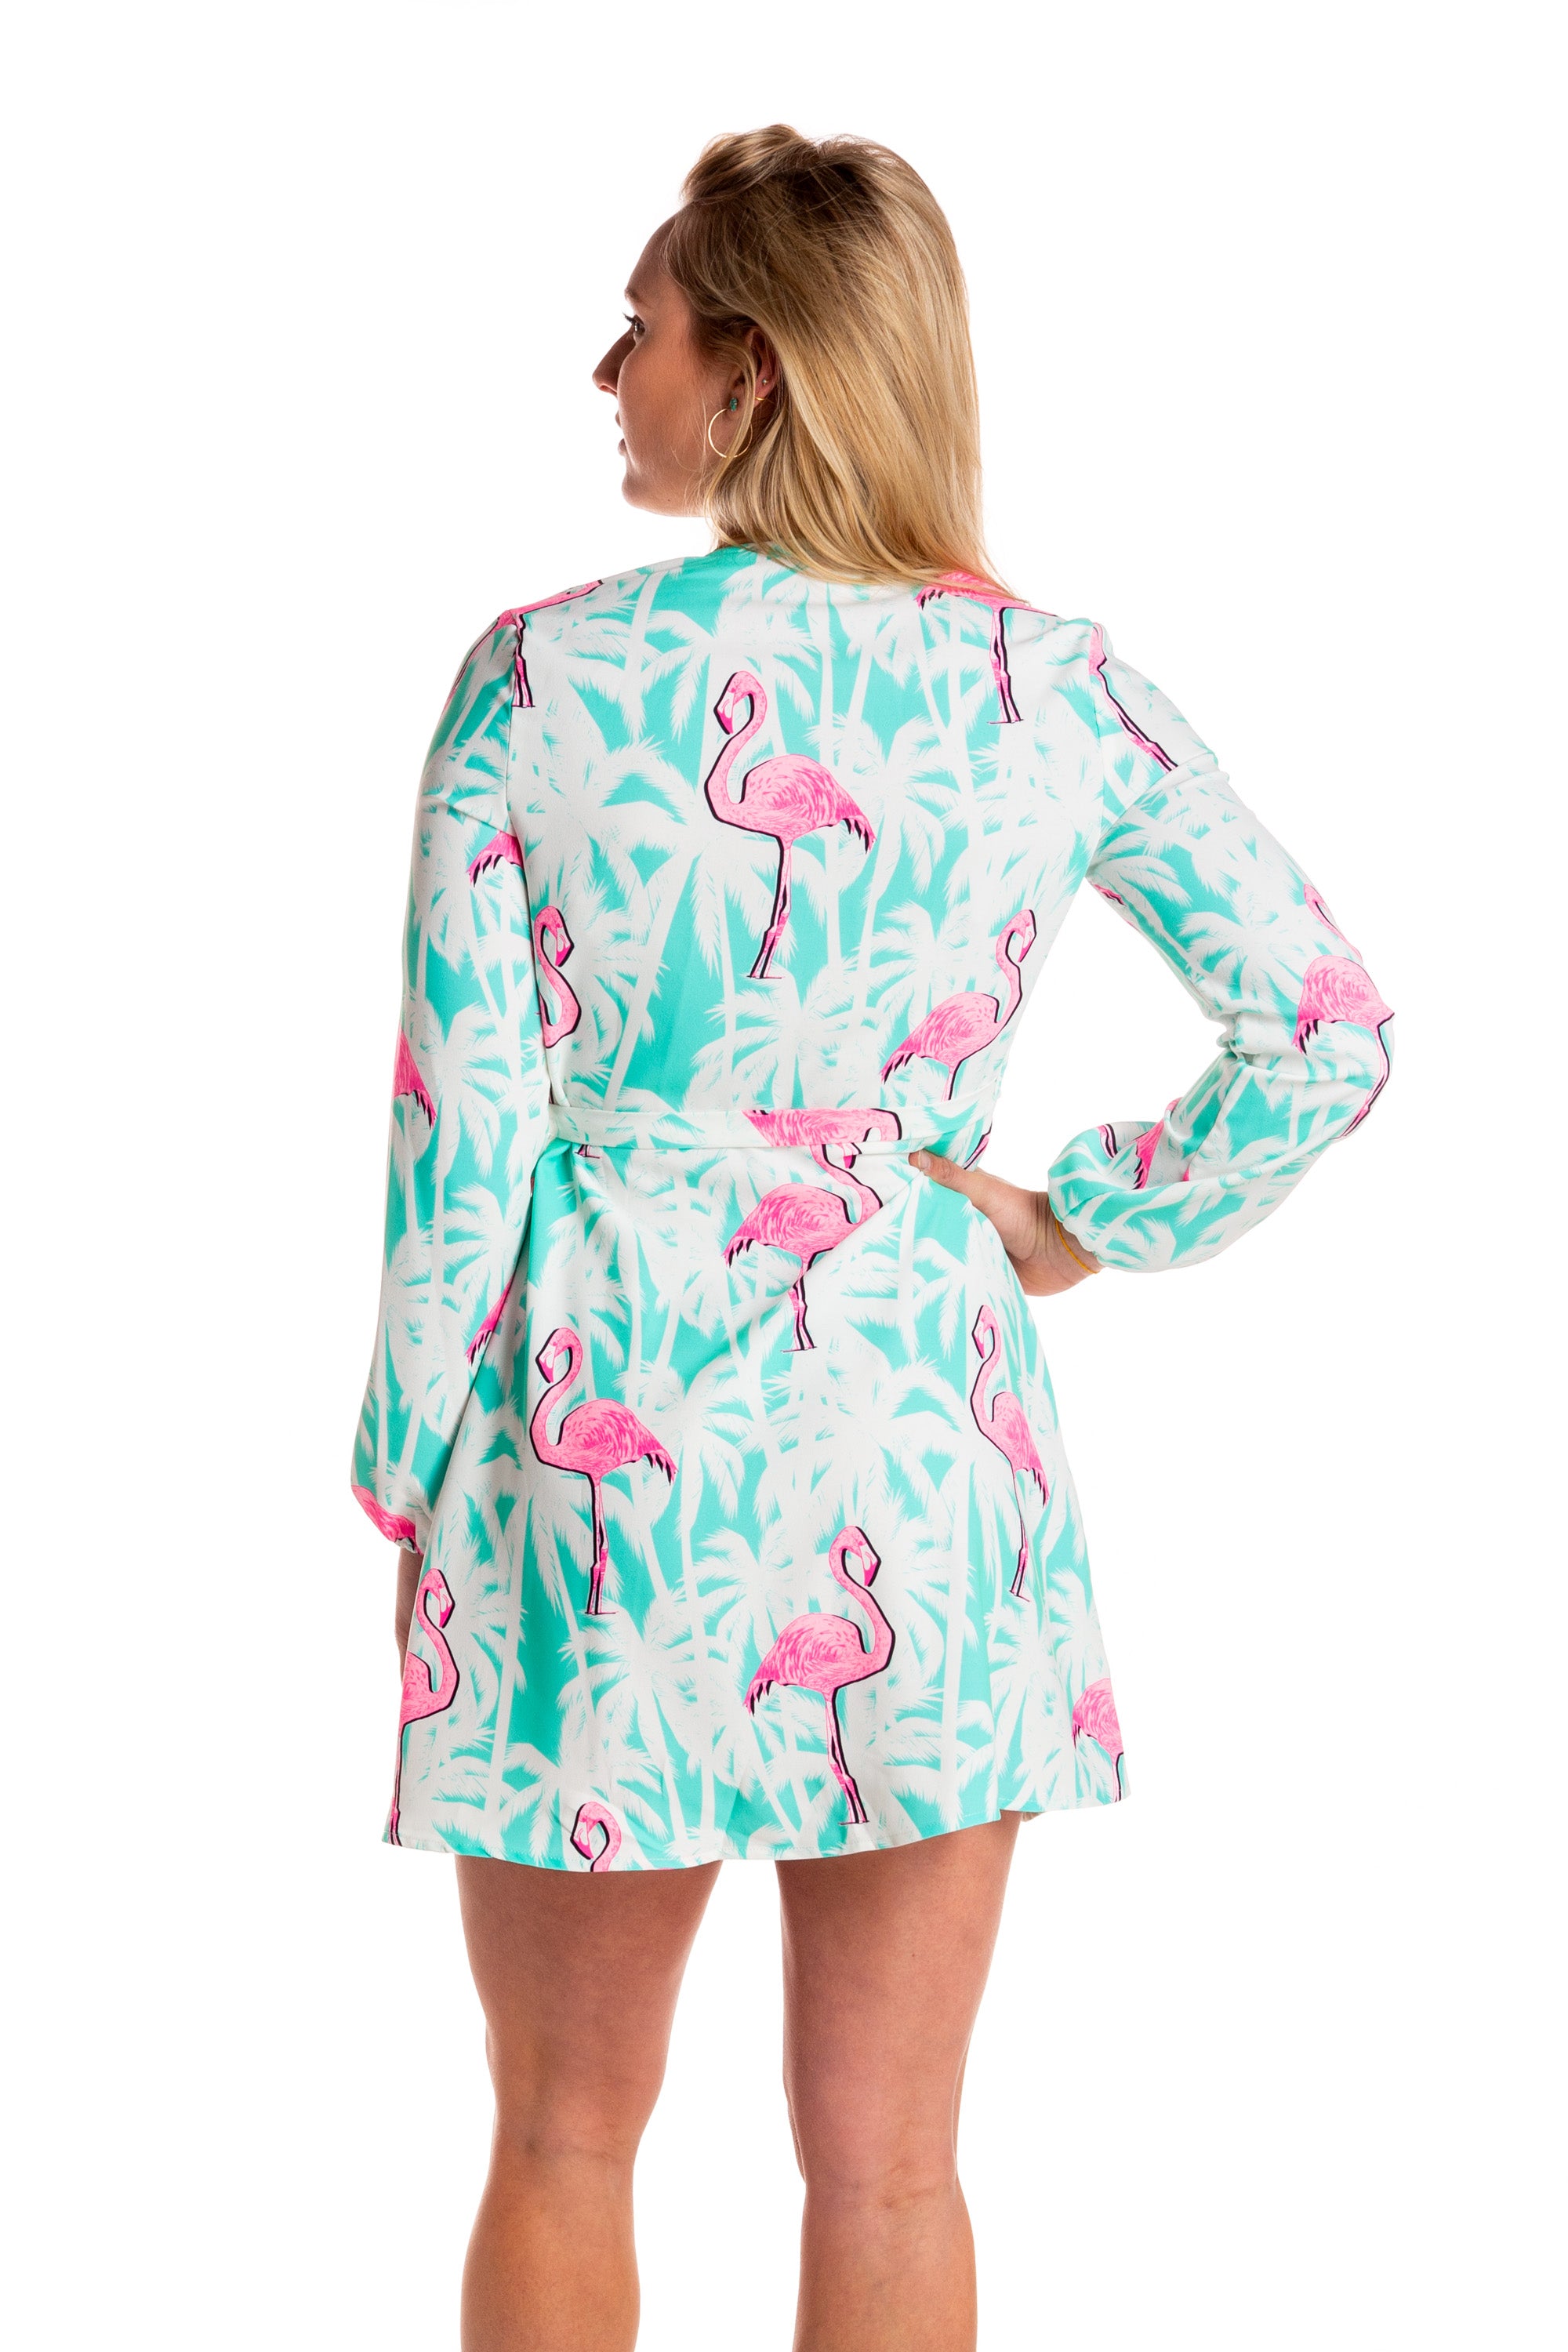 THE ULTIMATE FLAMINGO DRESS  Flamingo fashion, Flamingo outfit, Flamingo  dress